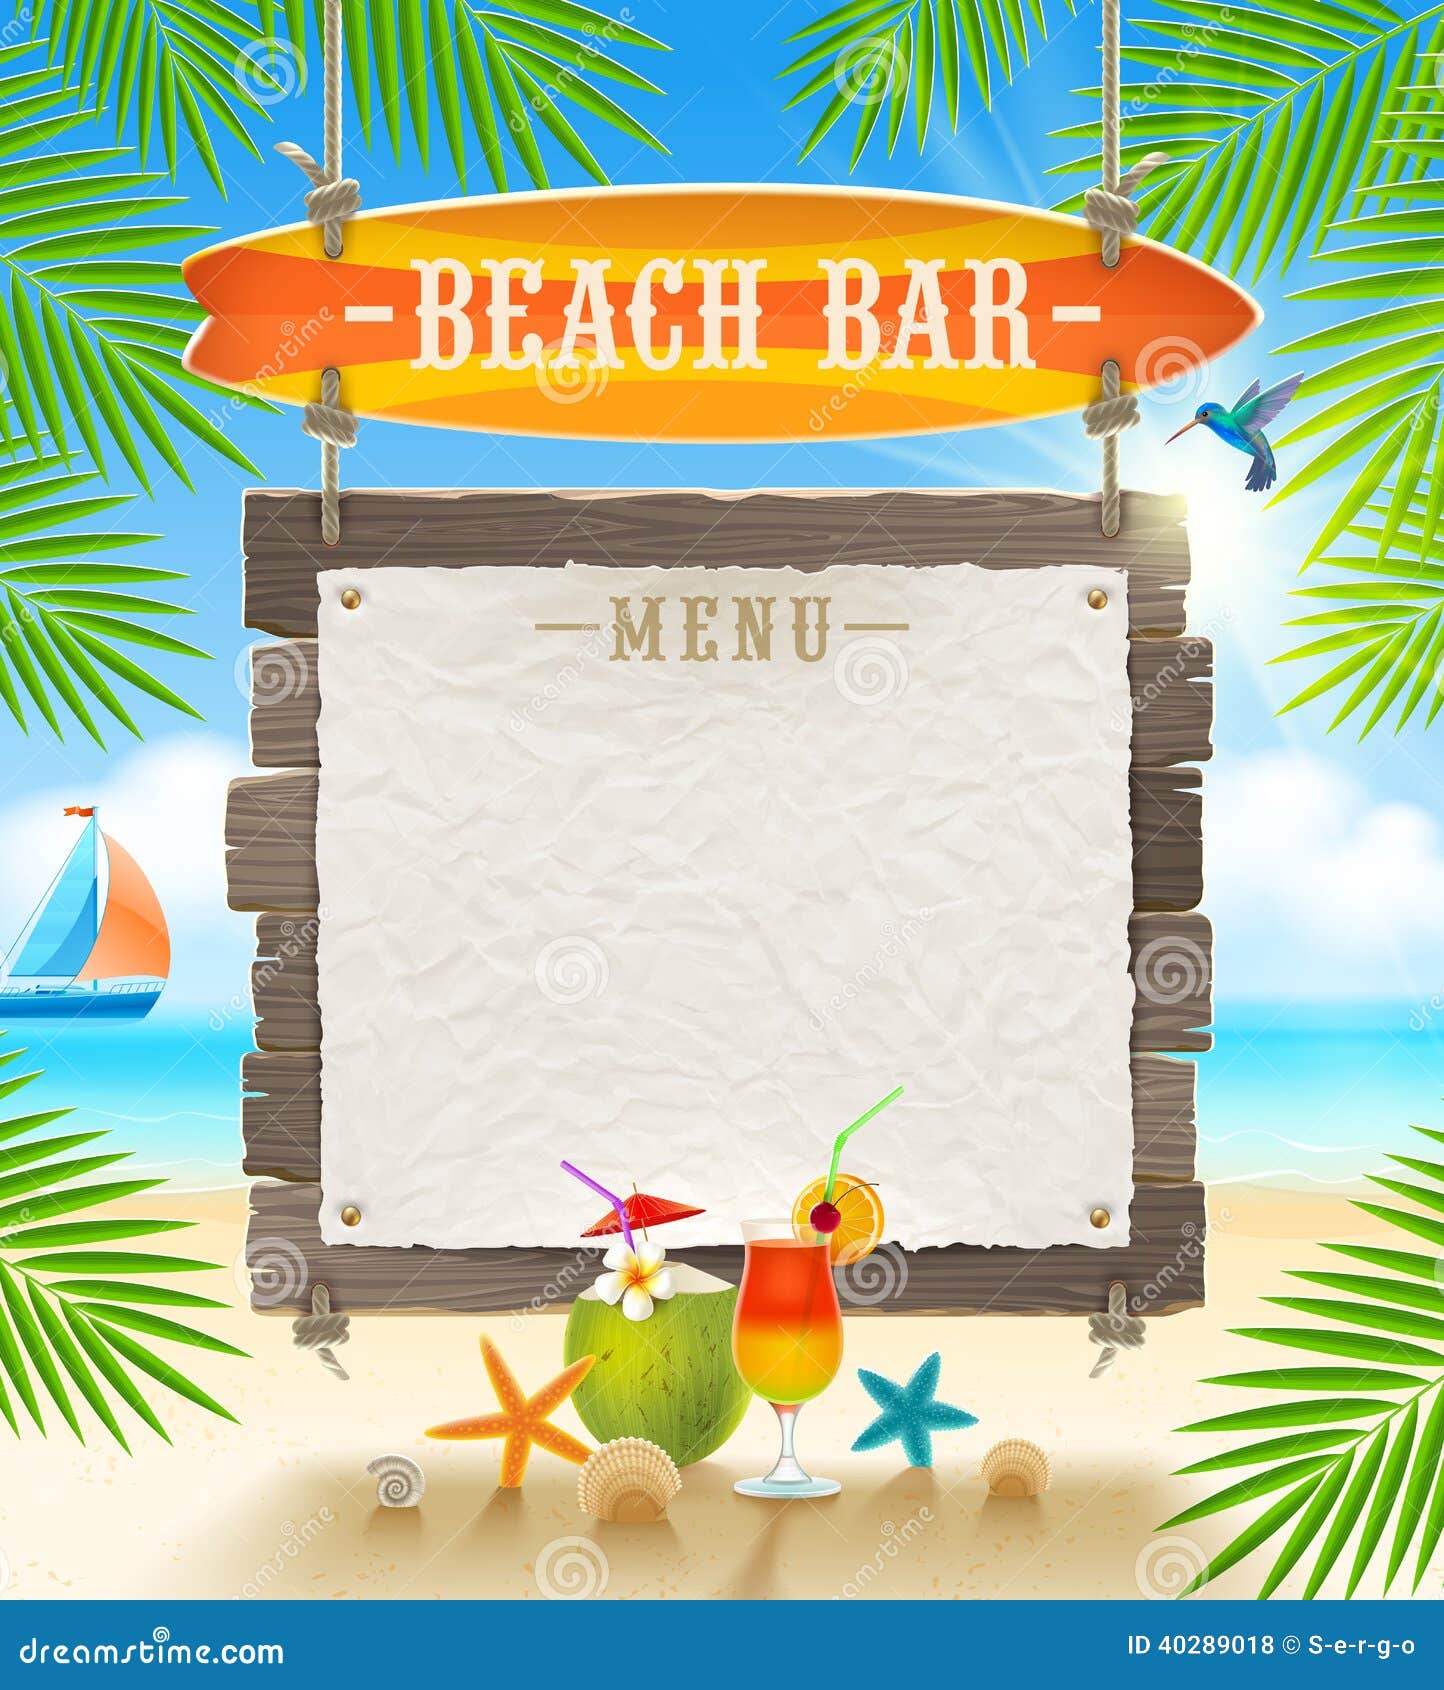 Tropical Beach Bar Signboard Stock Vector - Image: 40289018